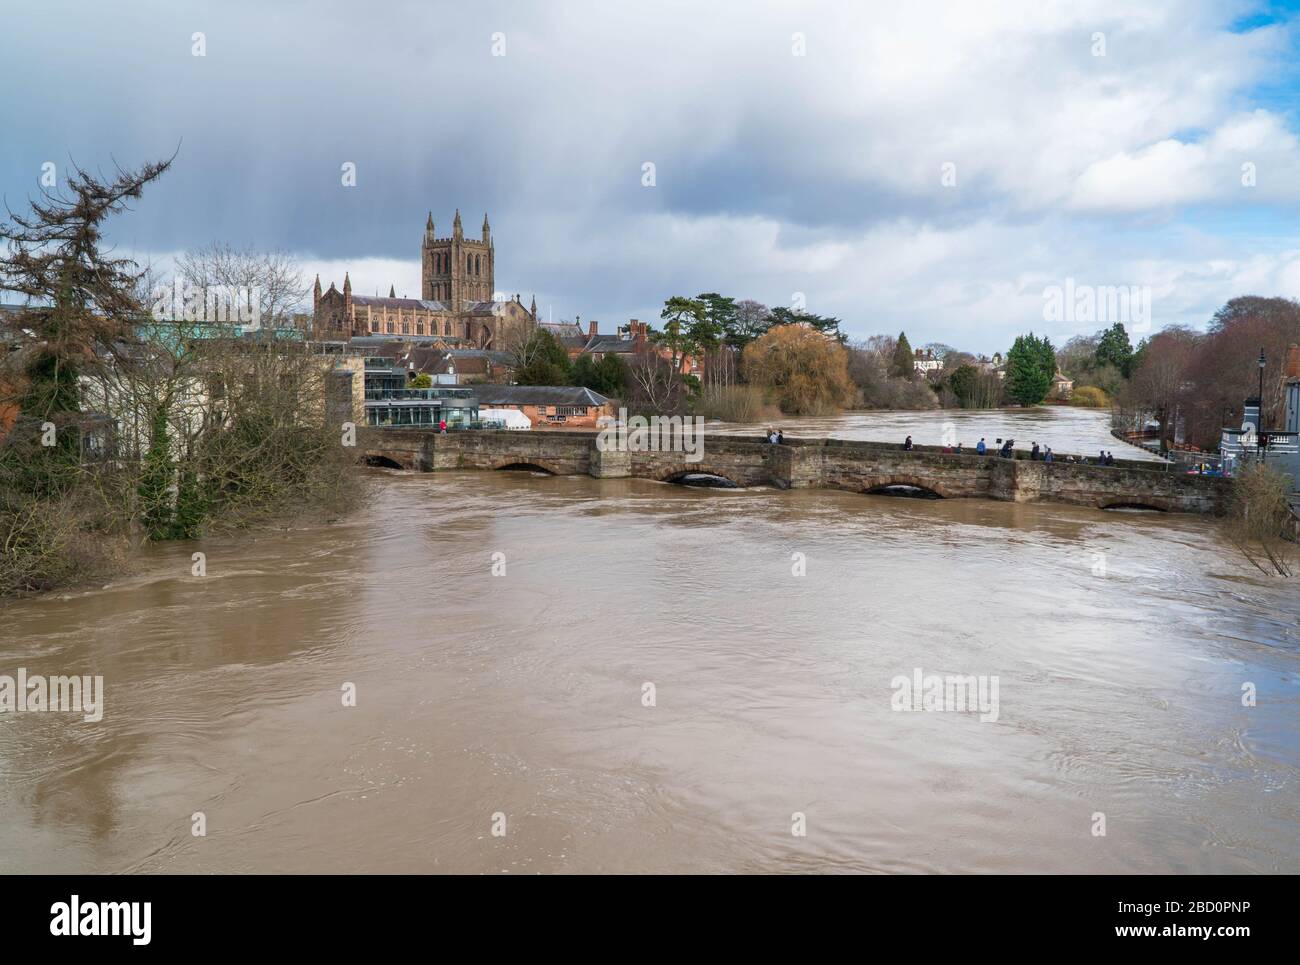 La cathédrale de Hereford surplombe le vieux pont et inondé la rivière Wye, déluge de la tempête Dennis, Hereford Herefordshire Royaume-Uni. Février 2020. Banque D'Images